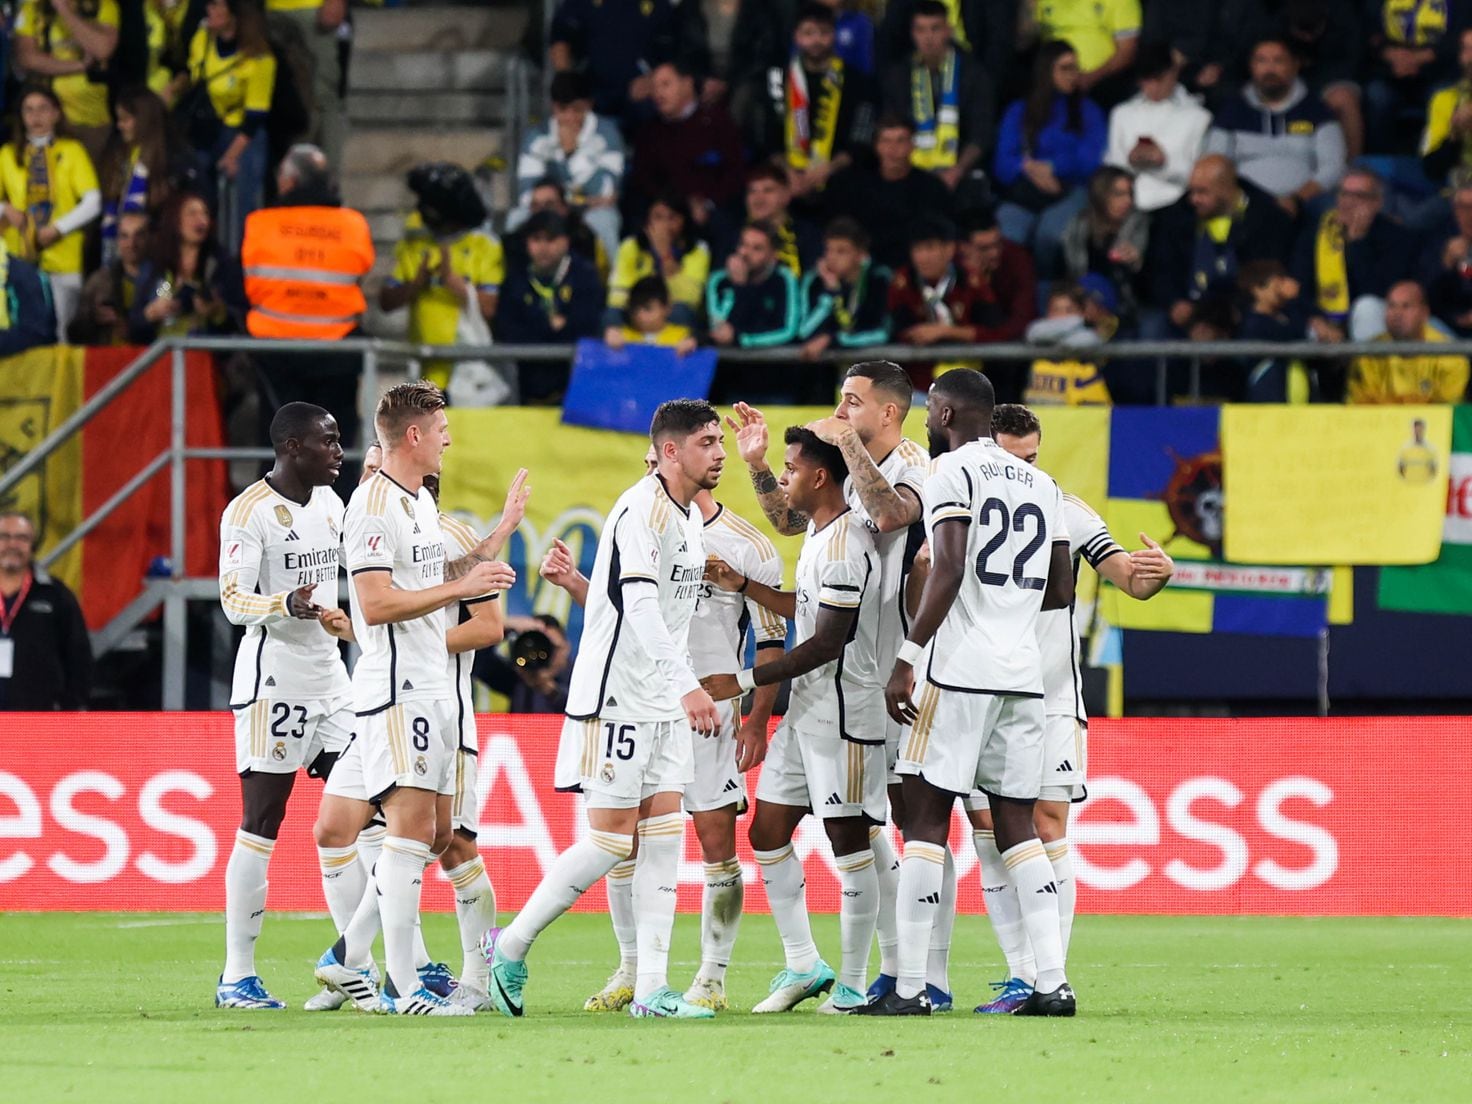 O Jogo do Fenerbahçe: Uma História de Glórias e Desafios